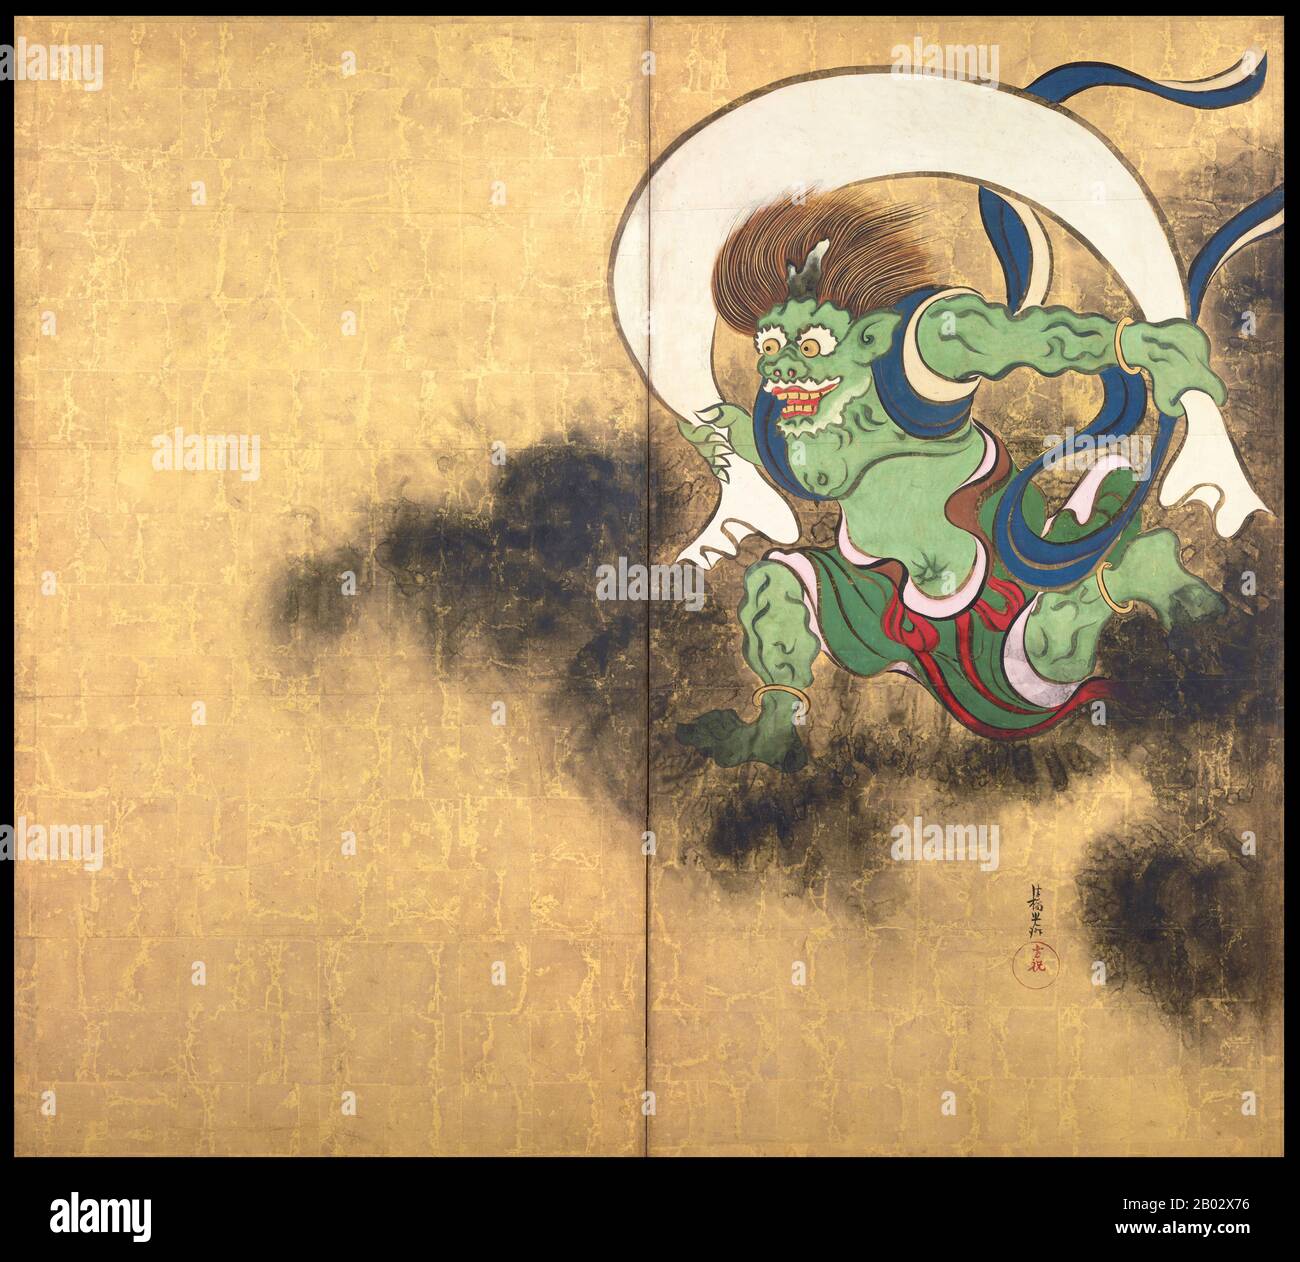 Fujin oder Futen ist der japanische windgott und einer der ältesten Shinto-Götter. Er wird allgemein als erschreckender assistentenähnlicher Dämon dargestellt, der einen großen Beutel mit Winden auf seinen Schultern trägt. In der japanischen Kunst wird die Gottheit oft zusammen mit Raijin, dem gott der Blitze, Donner und Unwetter, dargestellt. Ogata Kōrin (1658 - 2. Juni 1716) war ein japanischer Maler der Rinpa-Schule. Er wurde in Kyoto geboren, einem reichen Händler, der einen Geschmack für die Künste hatte. Korin studierte auch unter Soken Yamamoto, der Kano-Schule, Tsunenobu und Gukei Sumiyoshi und wurde stark von seinen Vorgängern Hon'ami Kōet beeinflusst Stockfoto